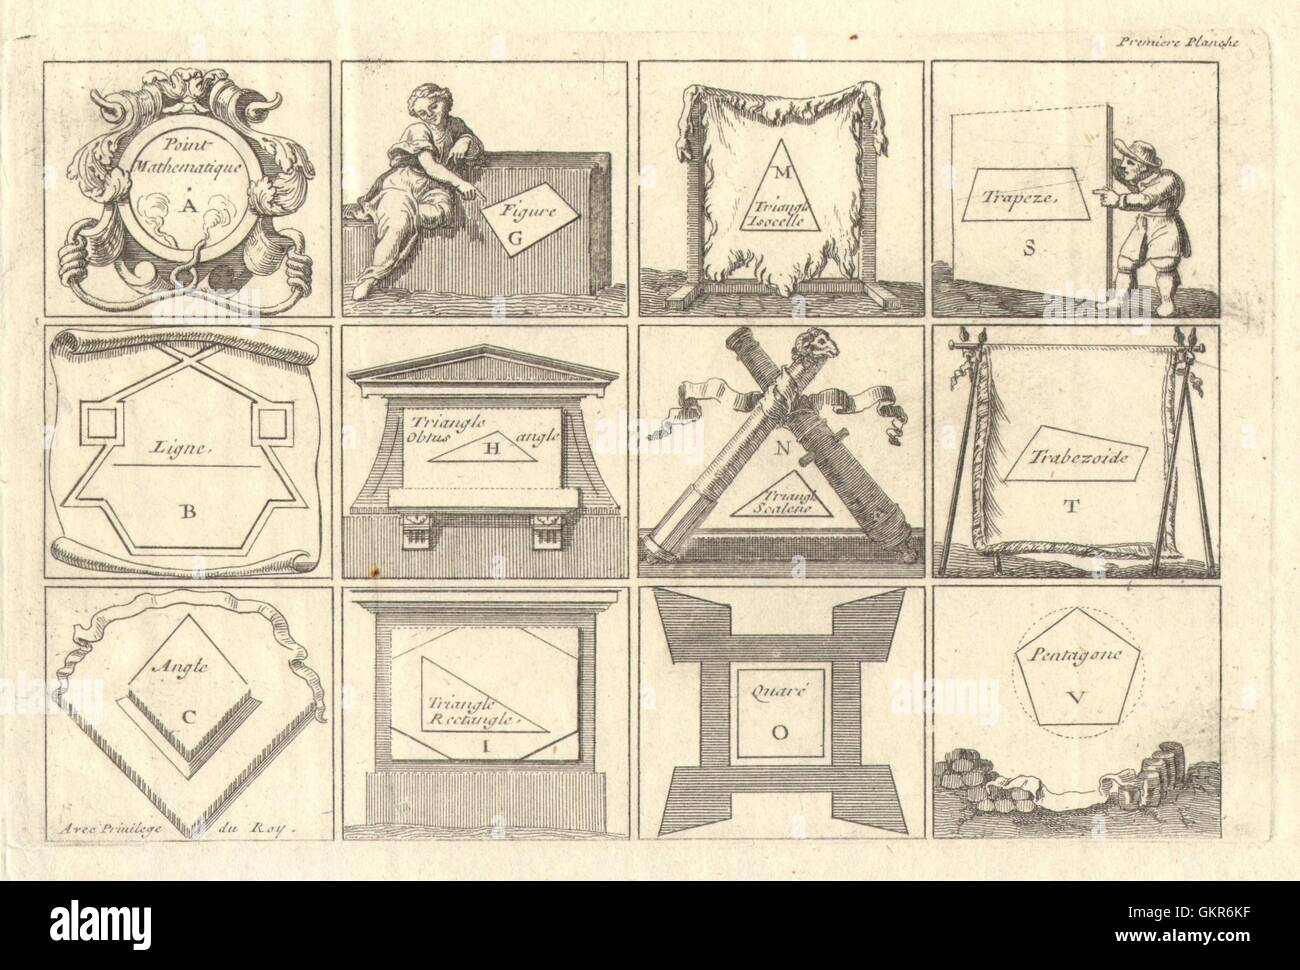 'Premiere Planche'. Geometric shapes and polygons. DE FER, antique print 1705 Stock Photo